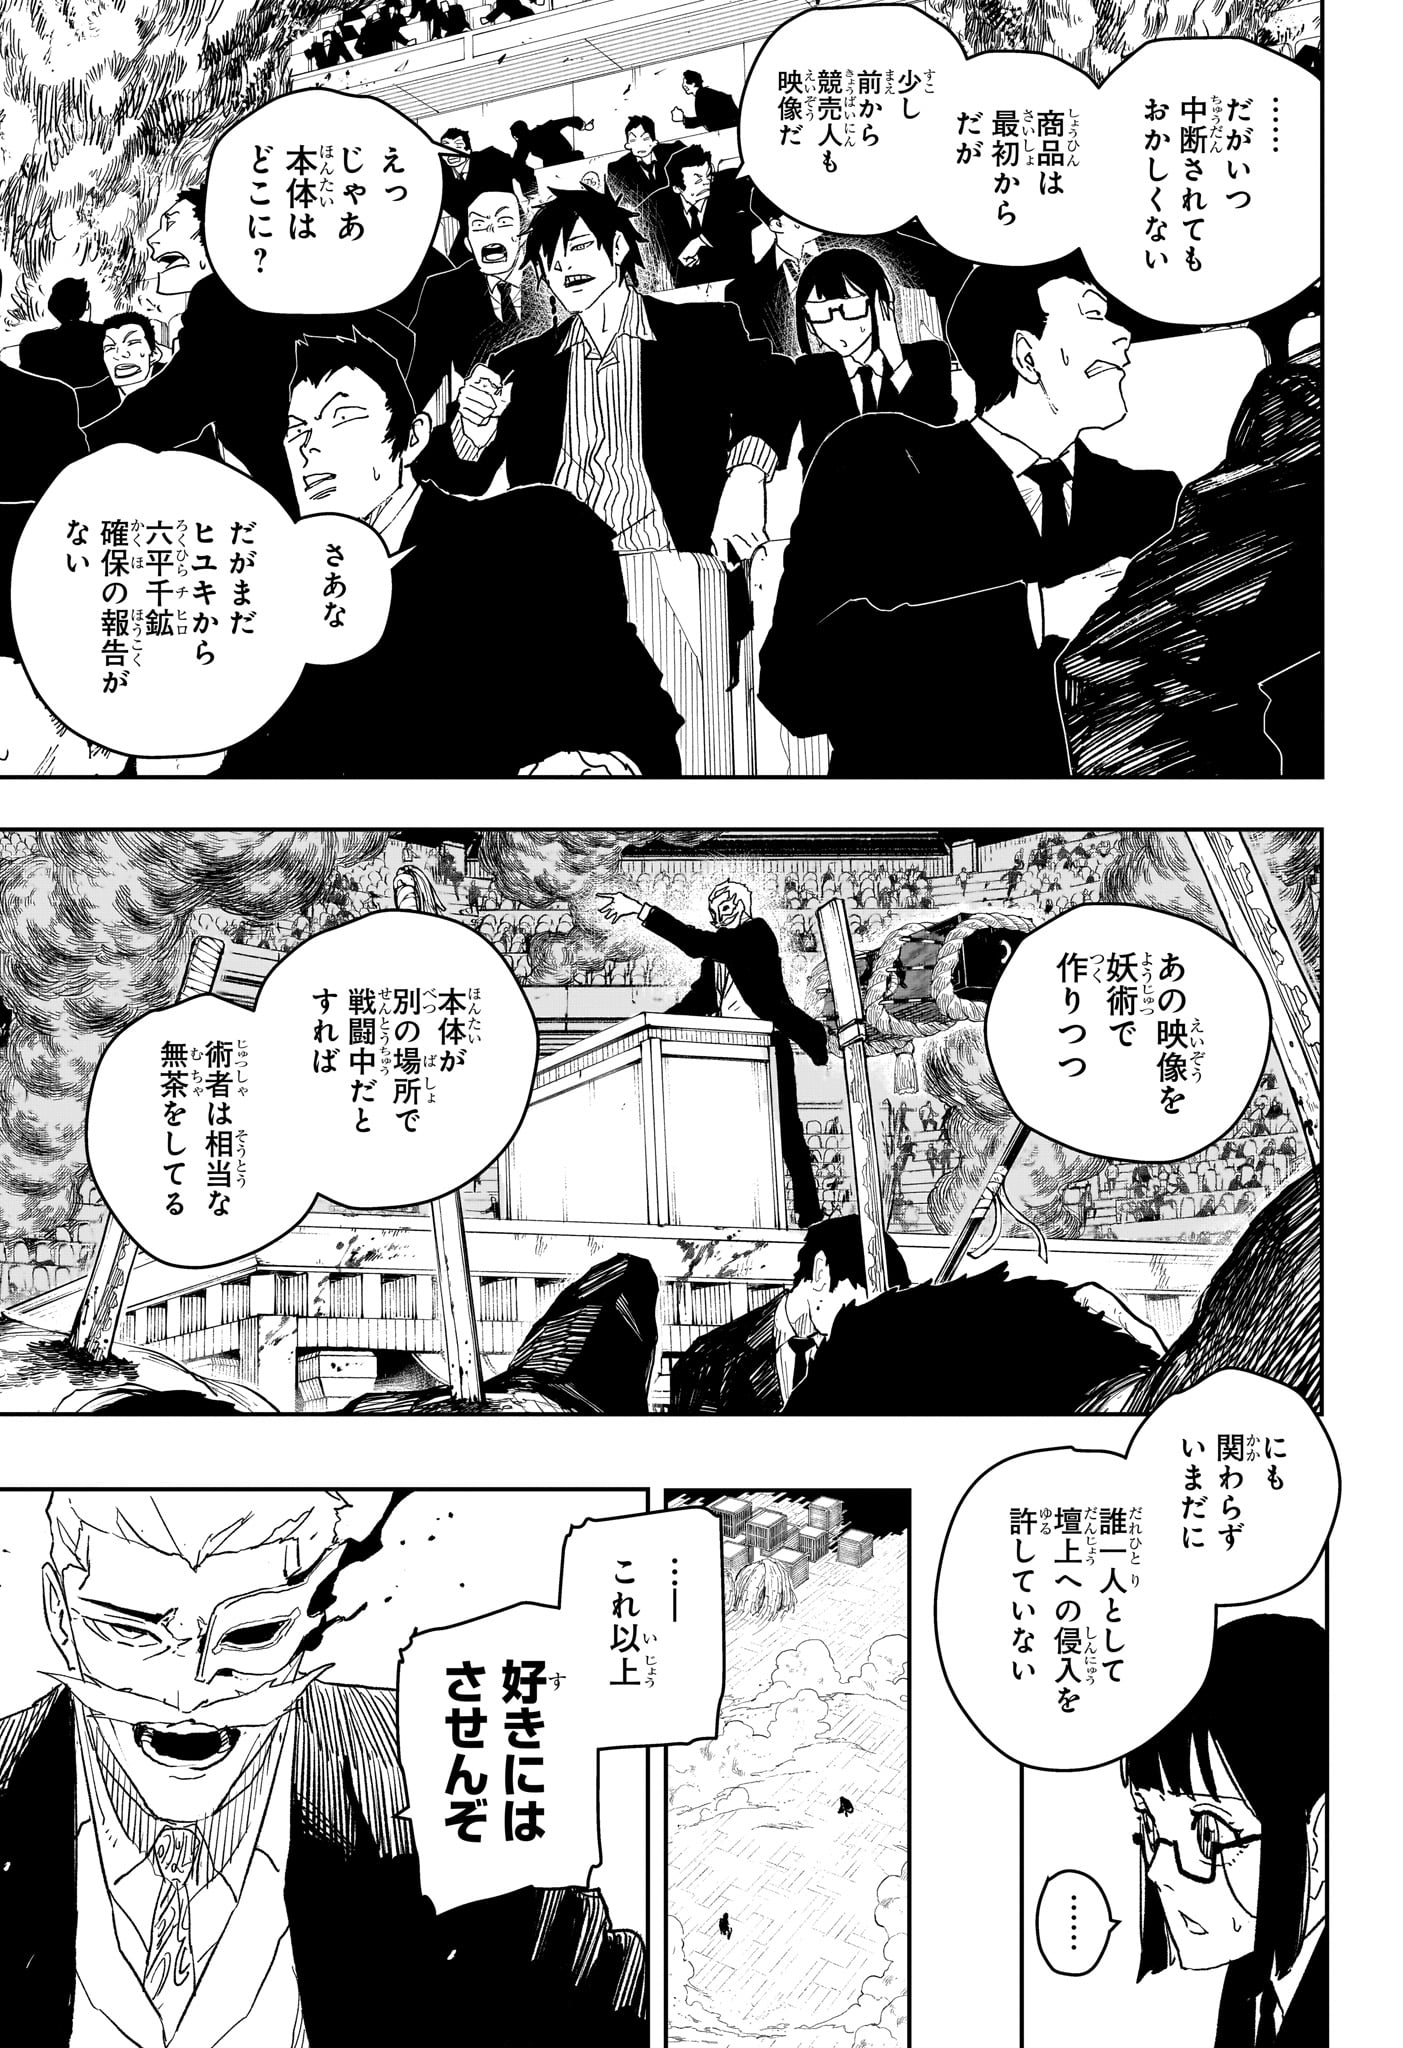 Kagurabachi - Chapter 39 - Page 5